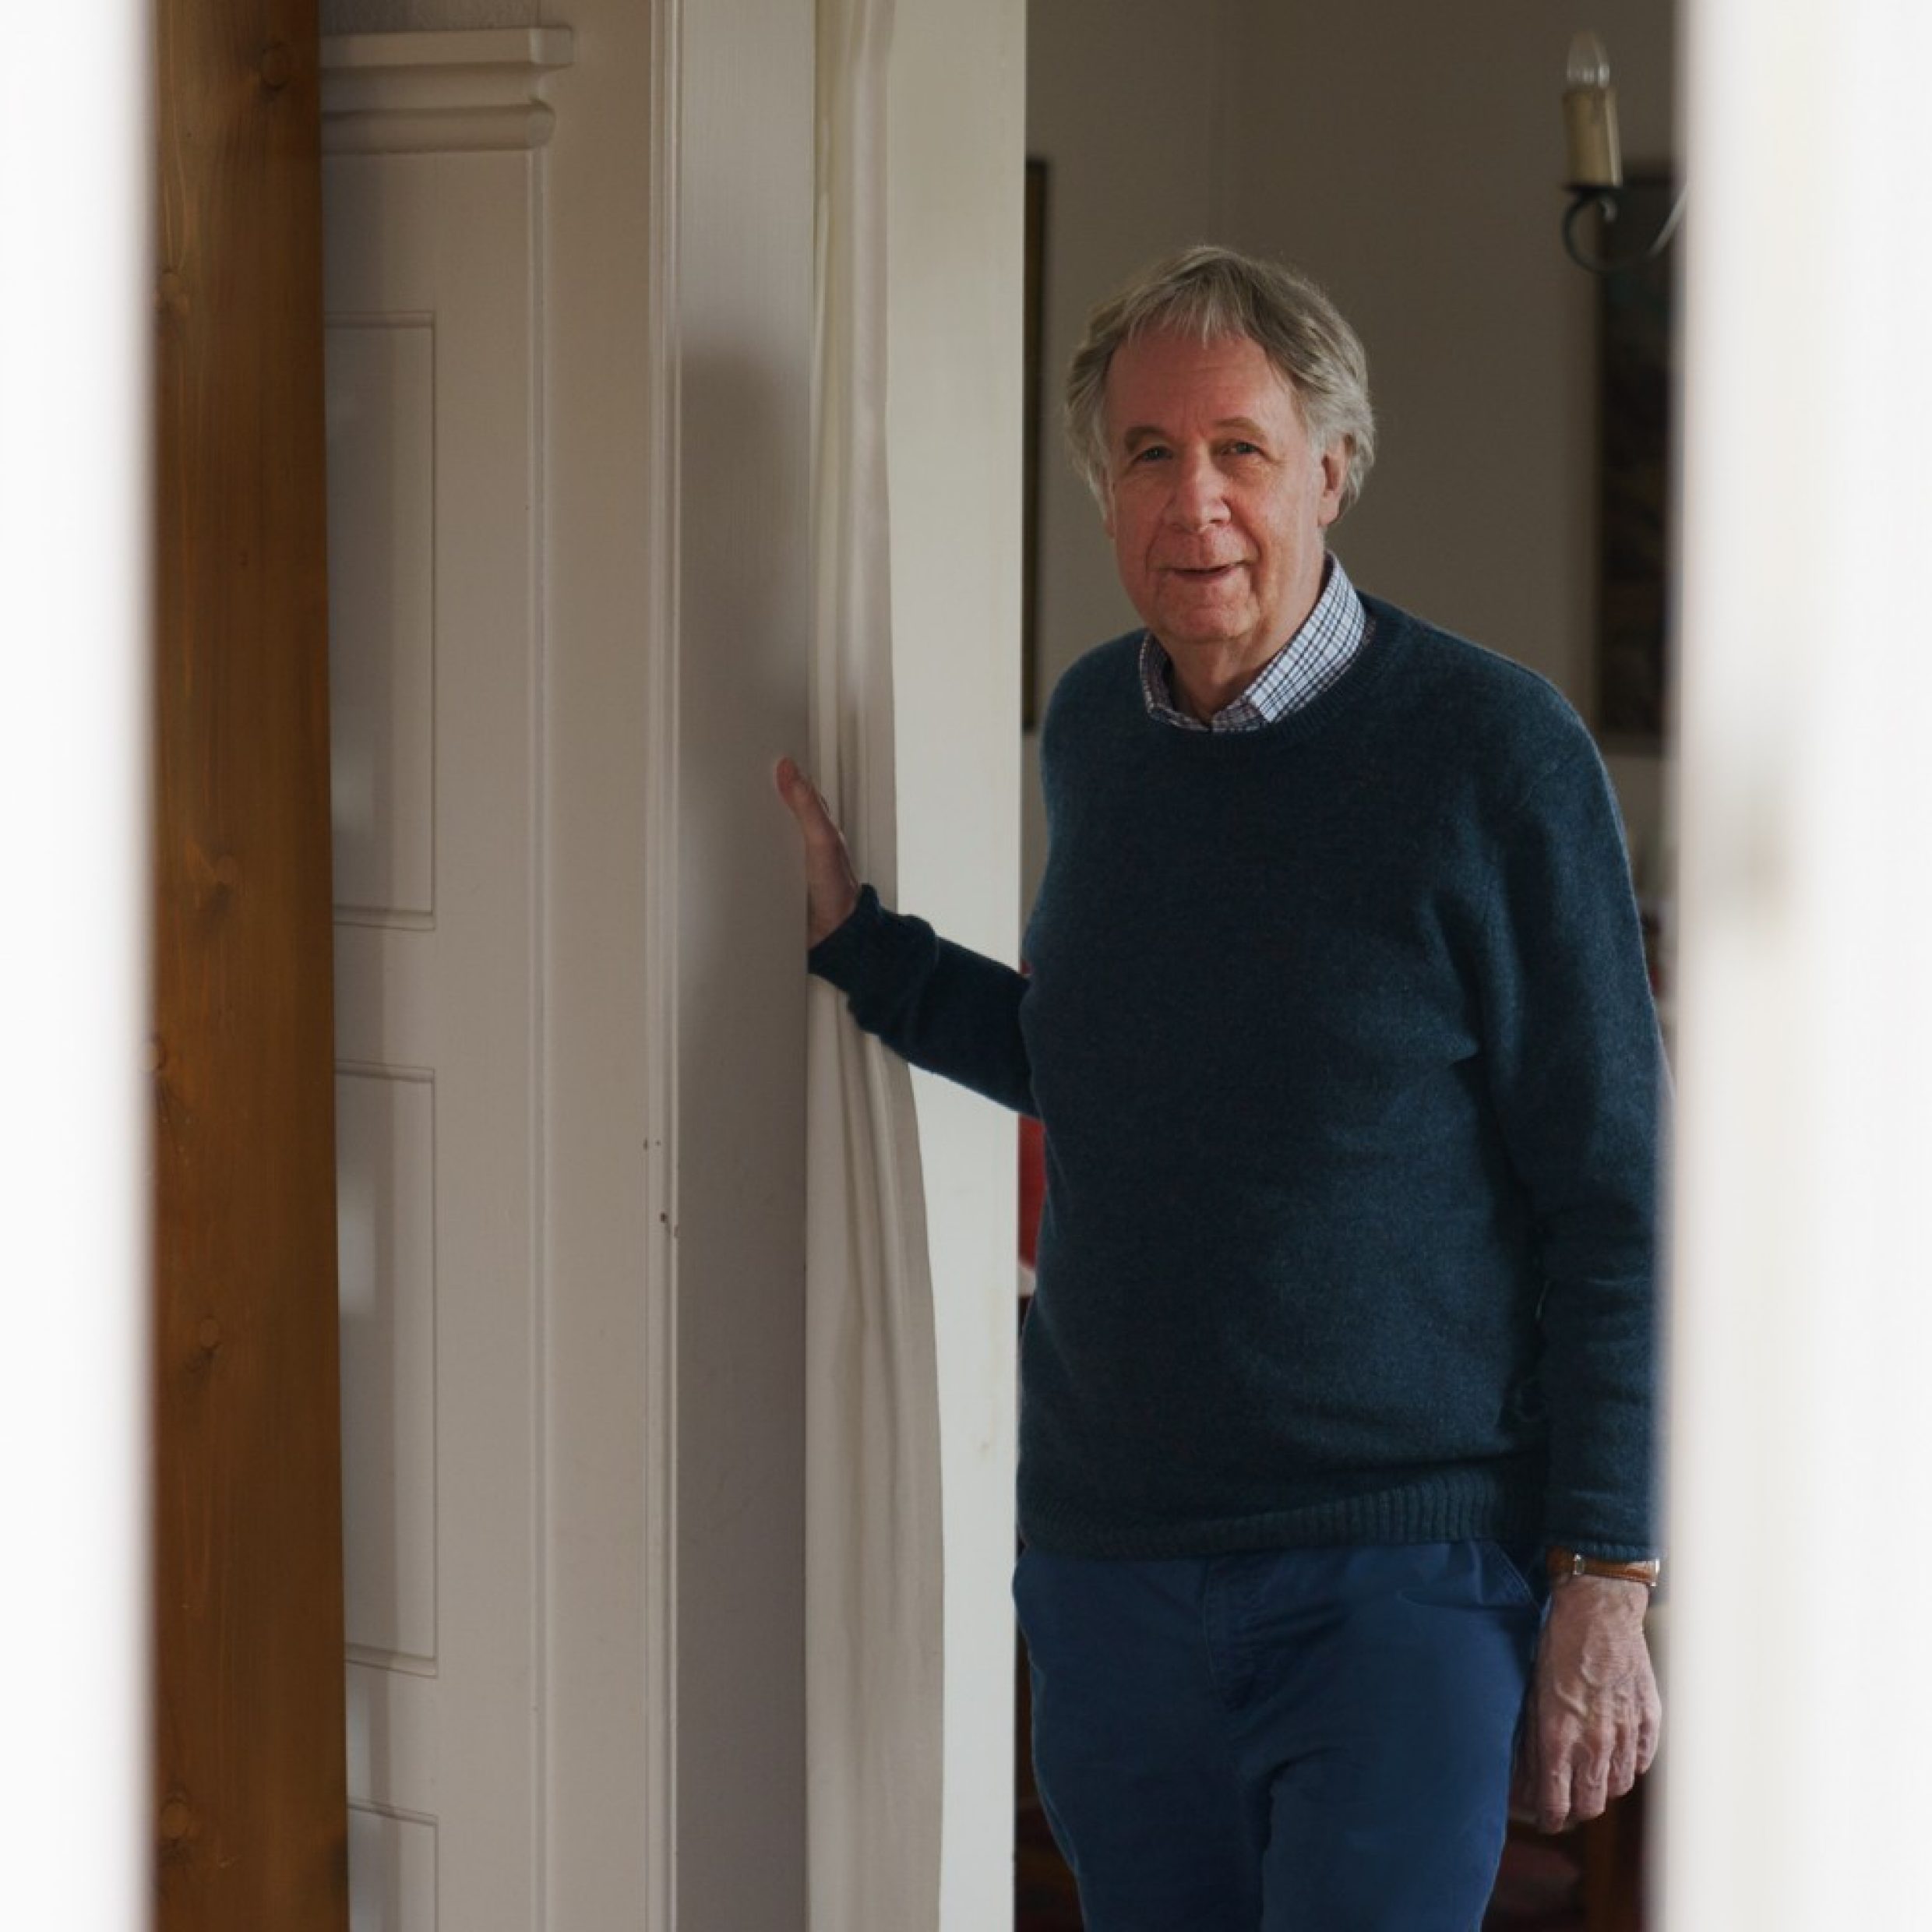 Un homme âgé se tient debout sur le seuil d’une porte et regarde l’objectif. Il porte une chemise sous un pull bleu.